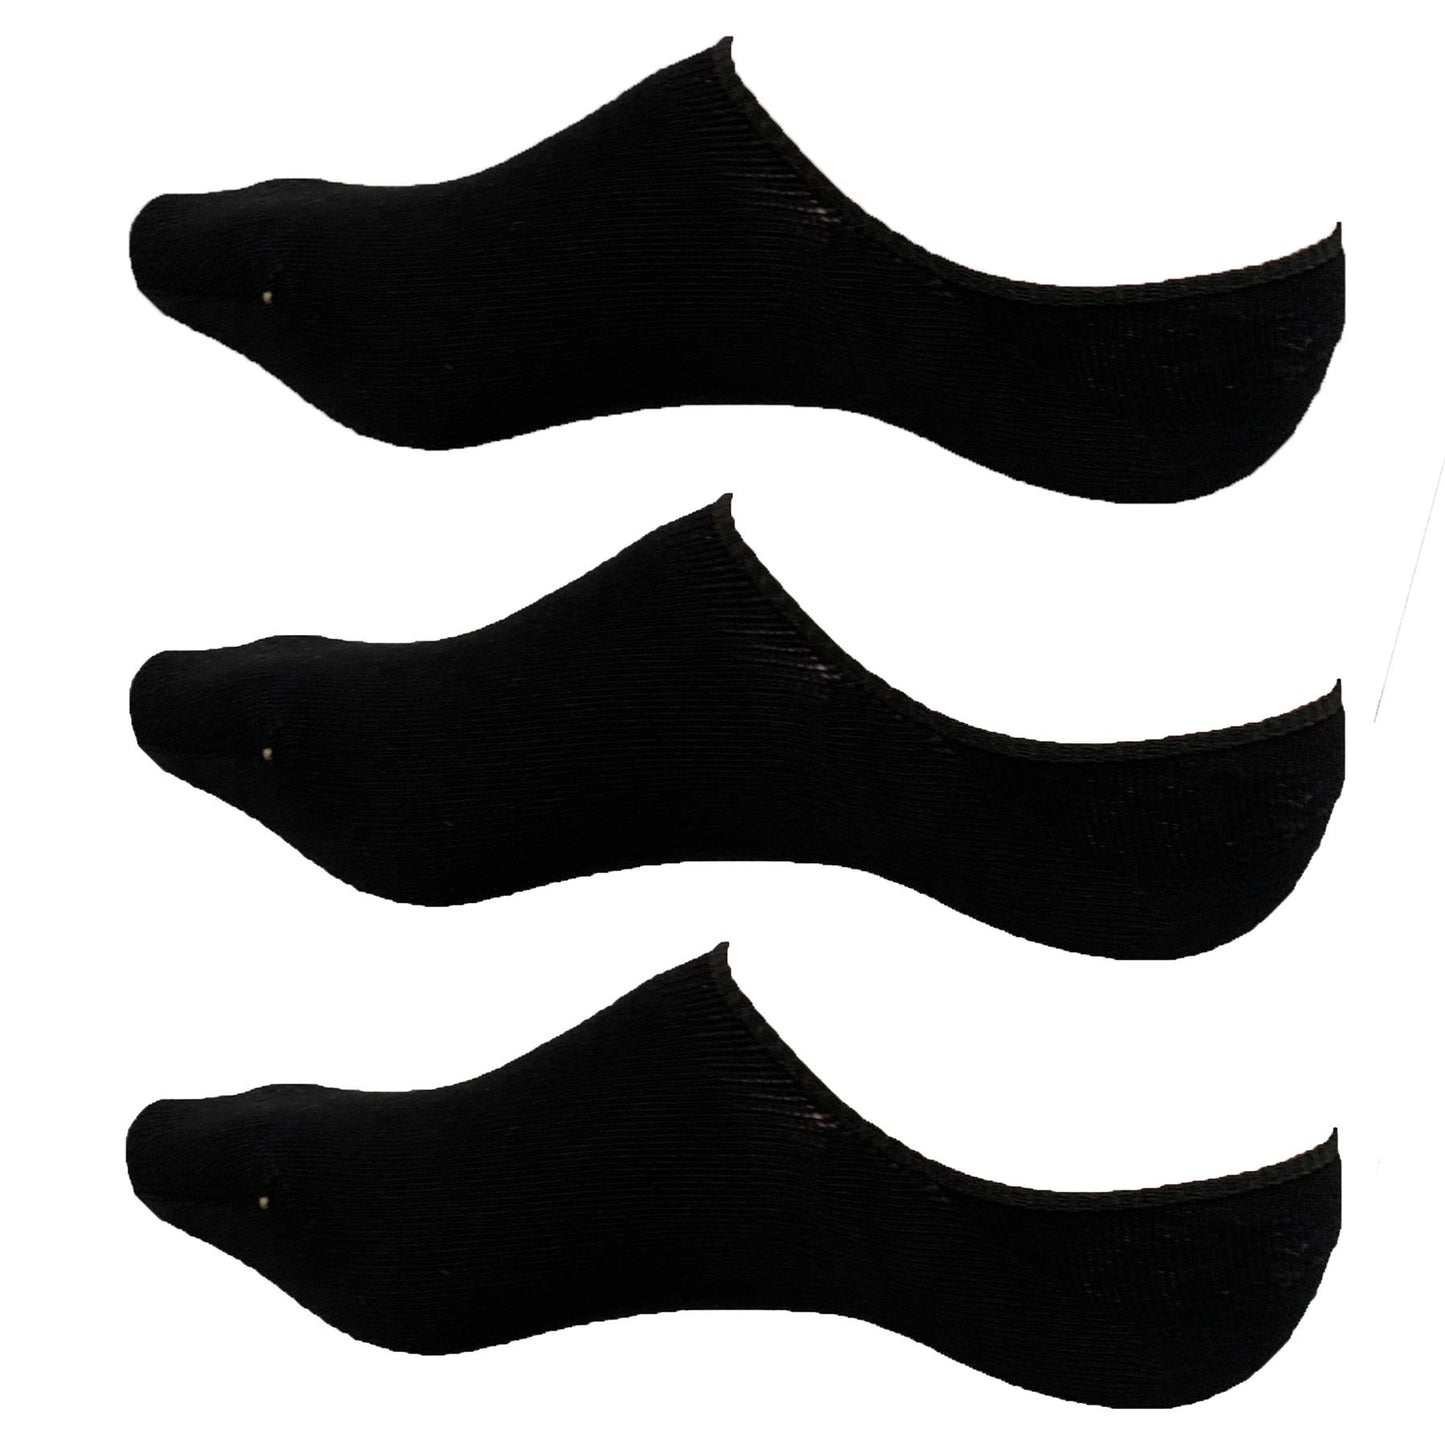 Joe Boxer Invisible unisex Men's/Women's trainer socks